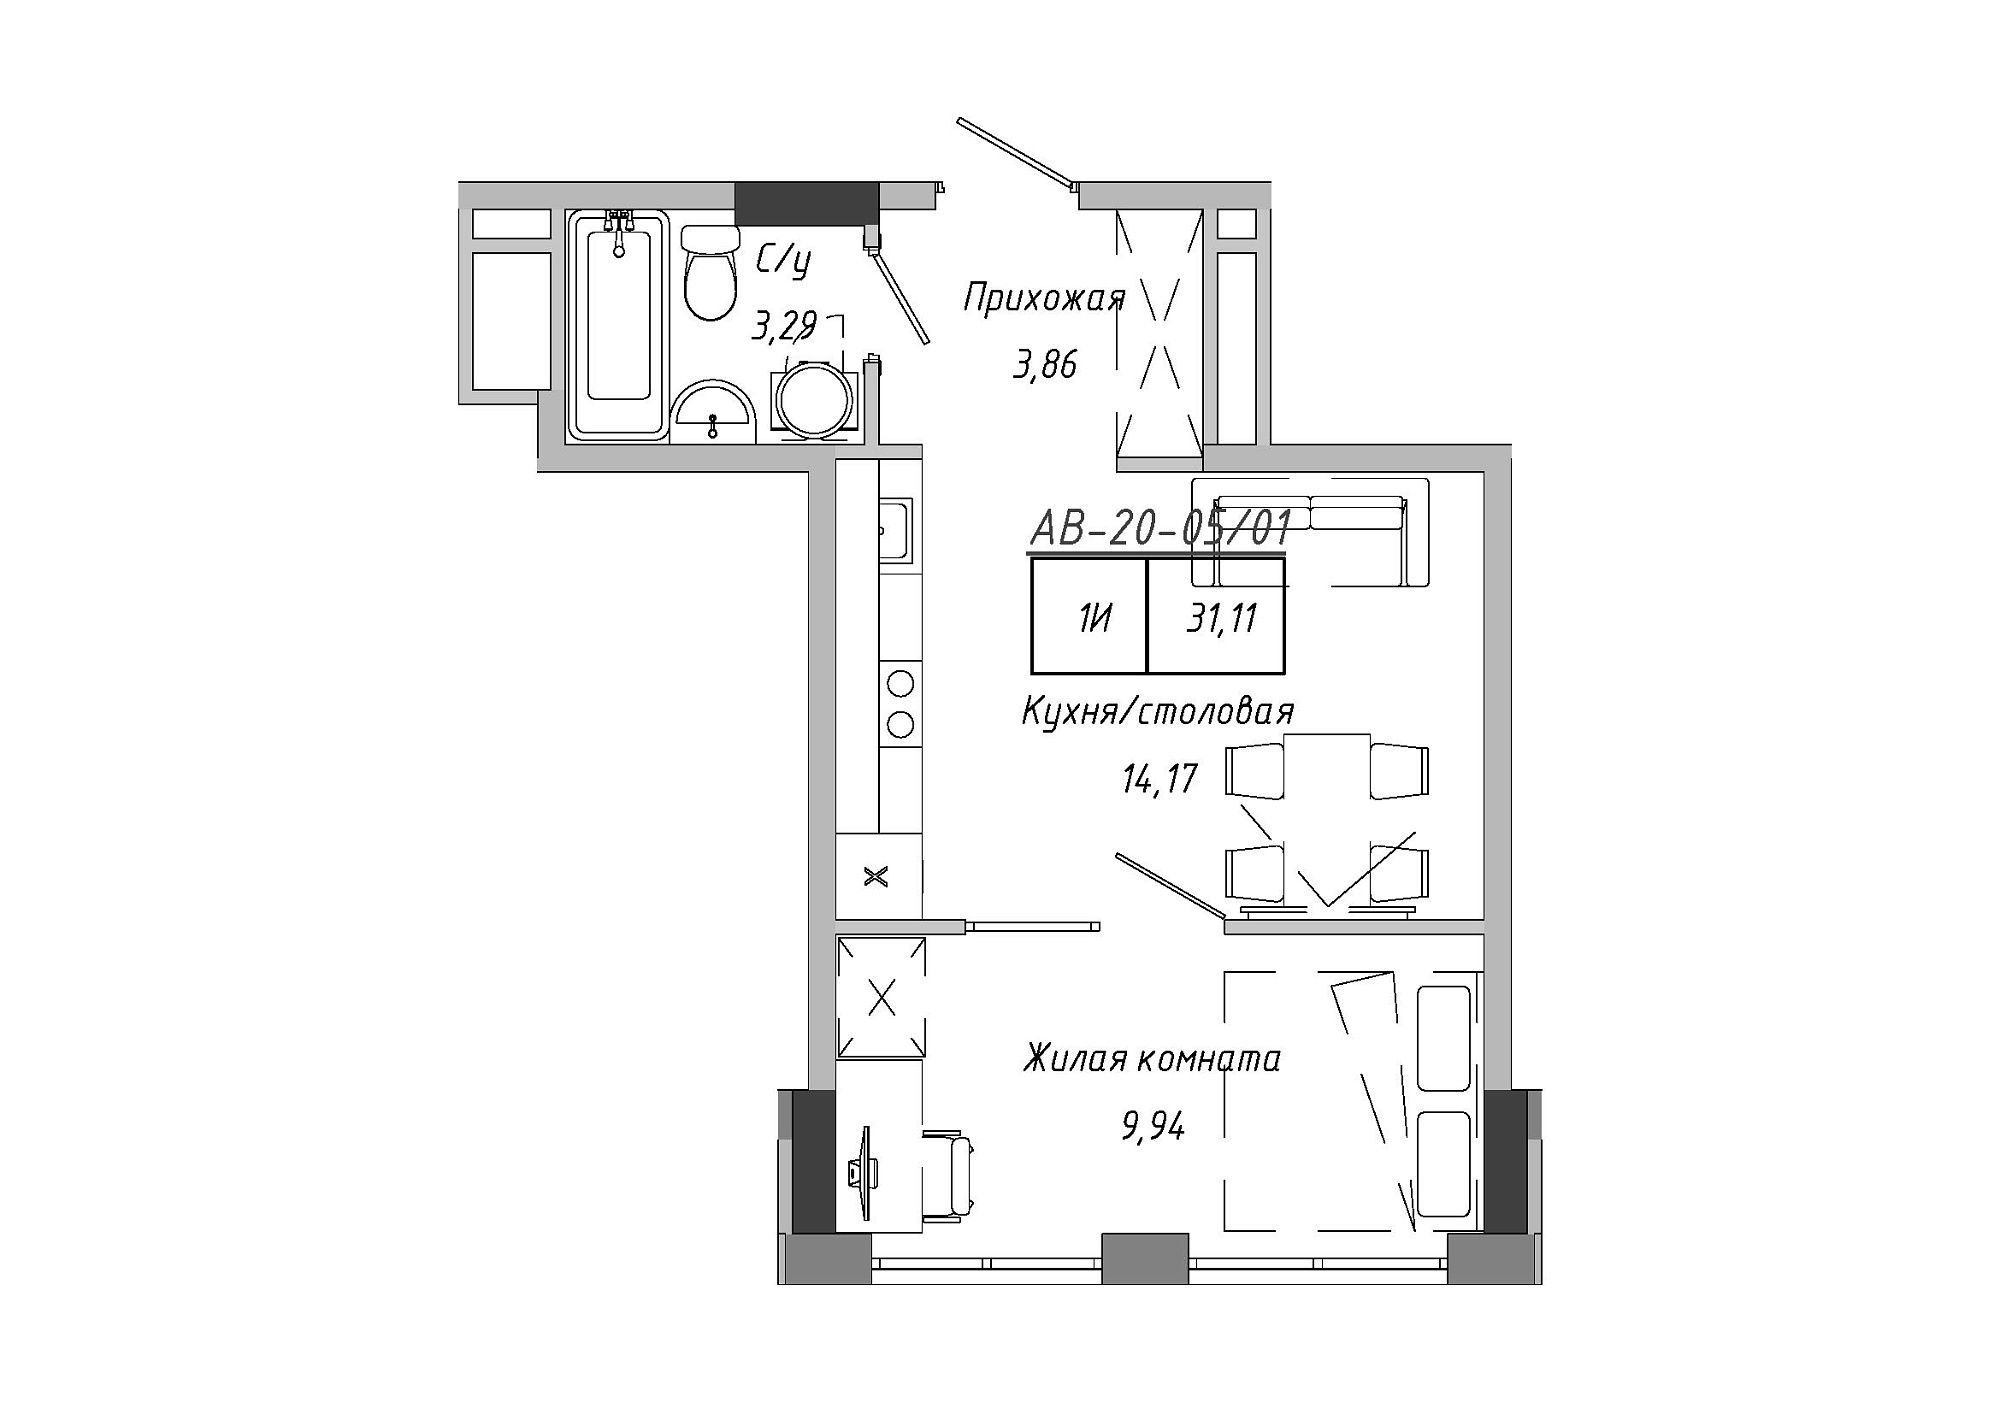 Планування 1-к квартира площею 30.28м2, AB-20-05/00001.